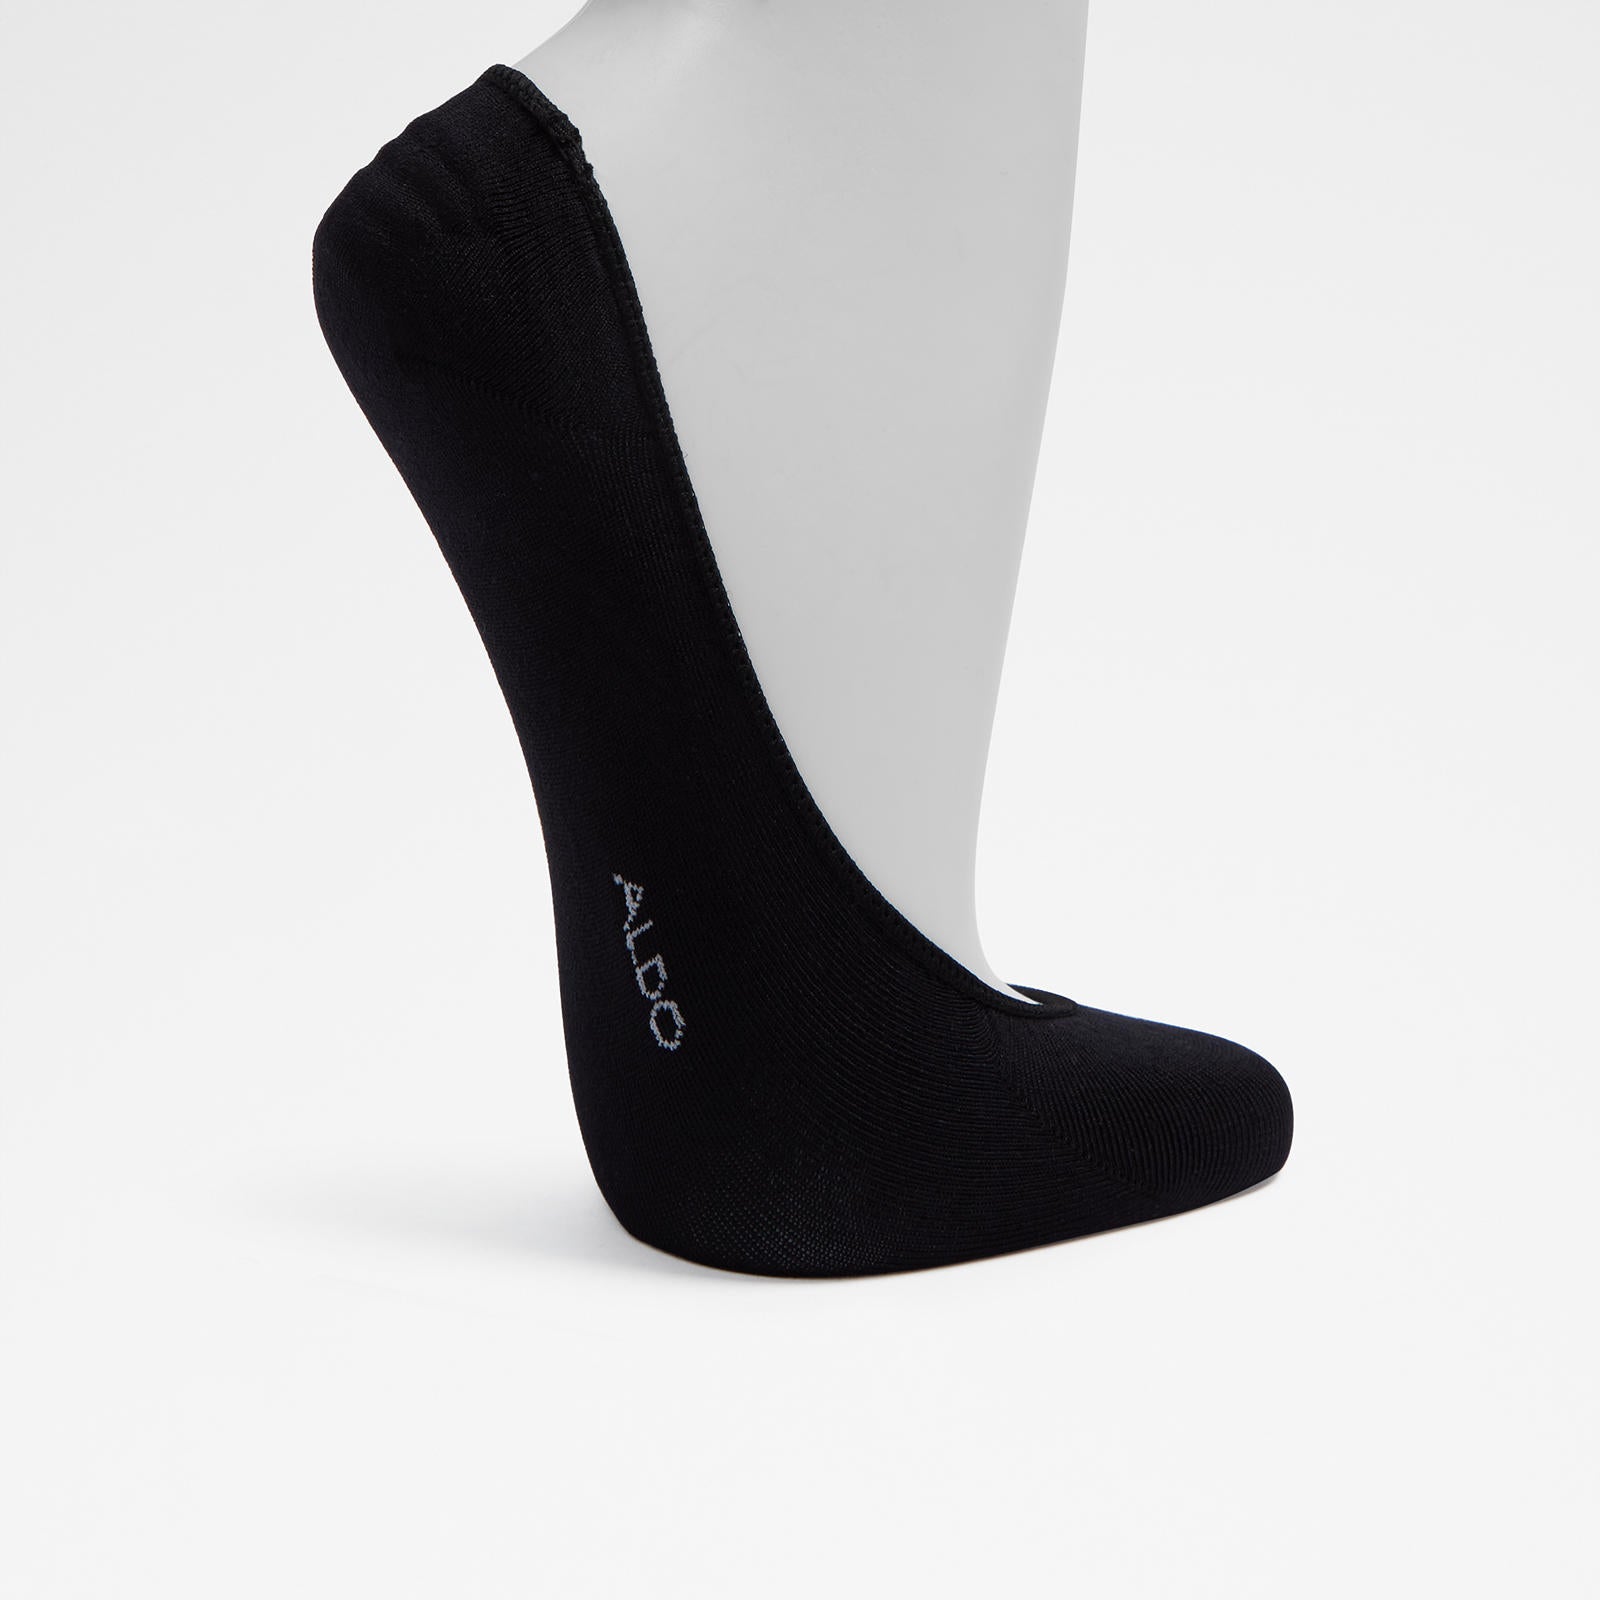 Sisk / Socks Accessory - Black - ALDO KSA